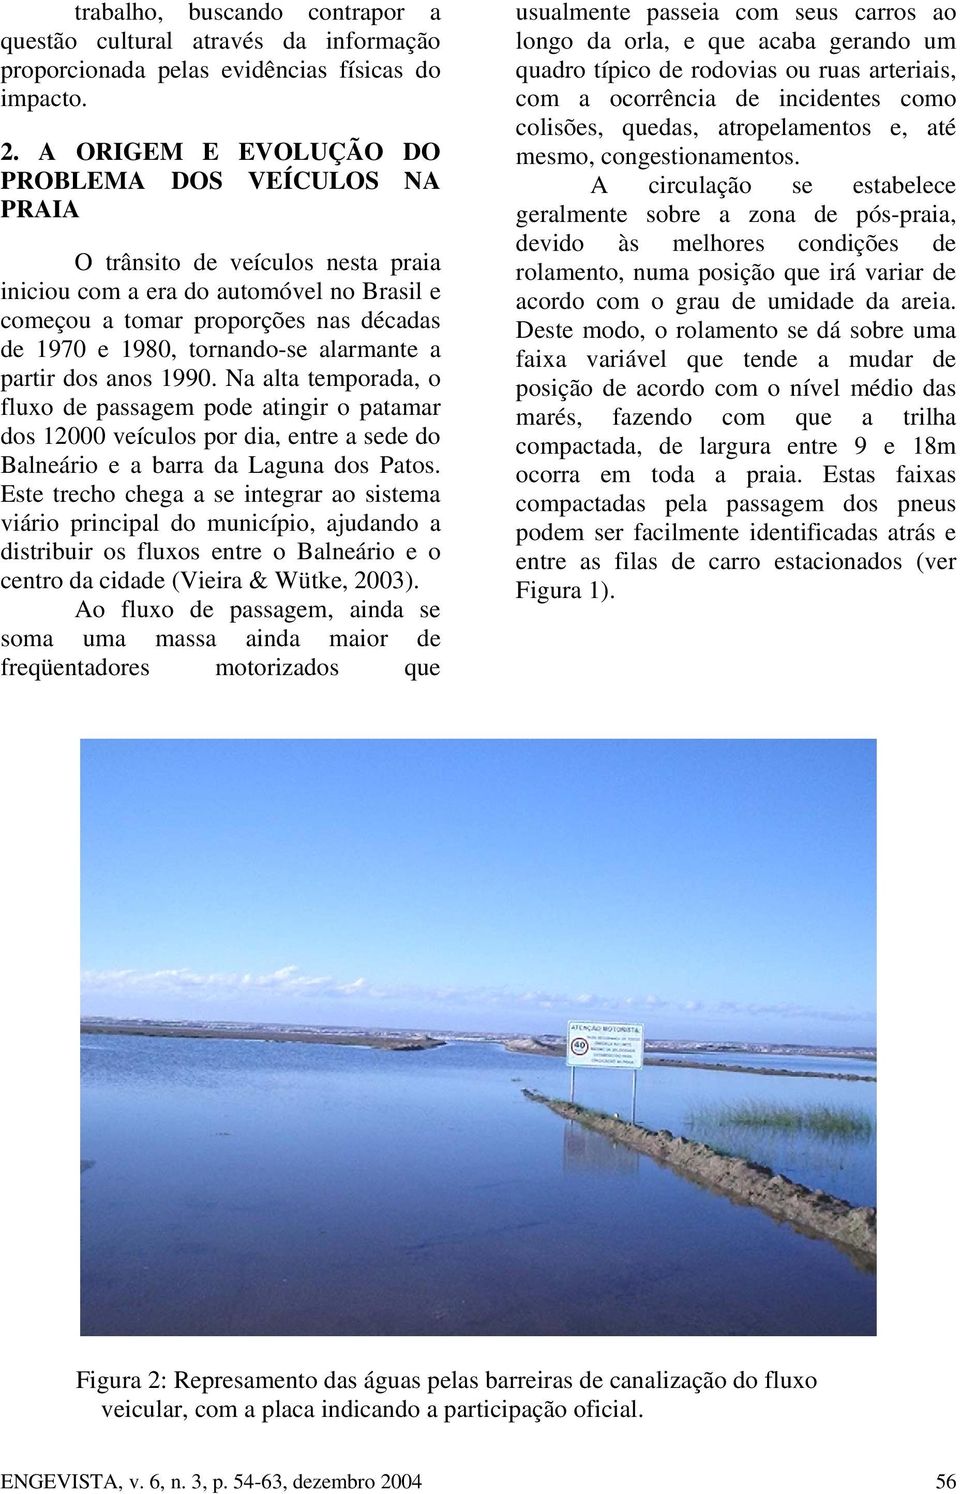 alarmante a partir dos anos 1990. Na alta temporada, o fluxo de passagem pode atingir o patamar dos 12000 veículos por dia, entre a sede do Balneário e a barra da Laguna dos Patos.